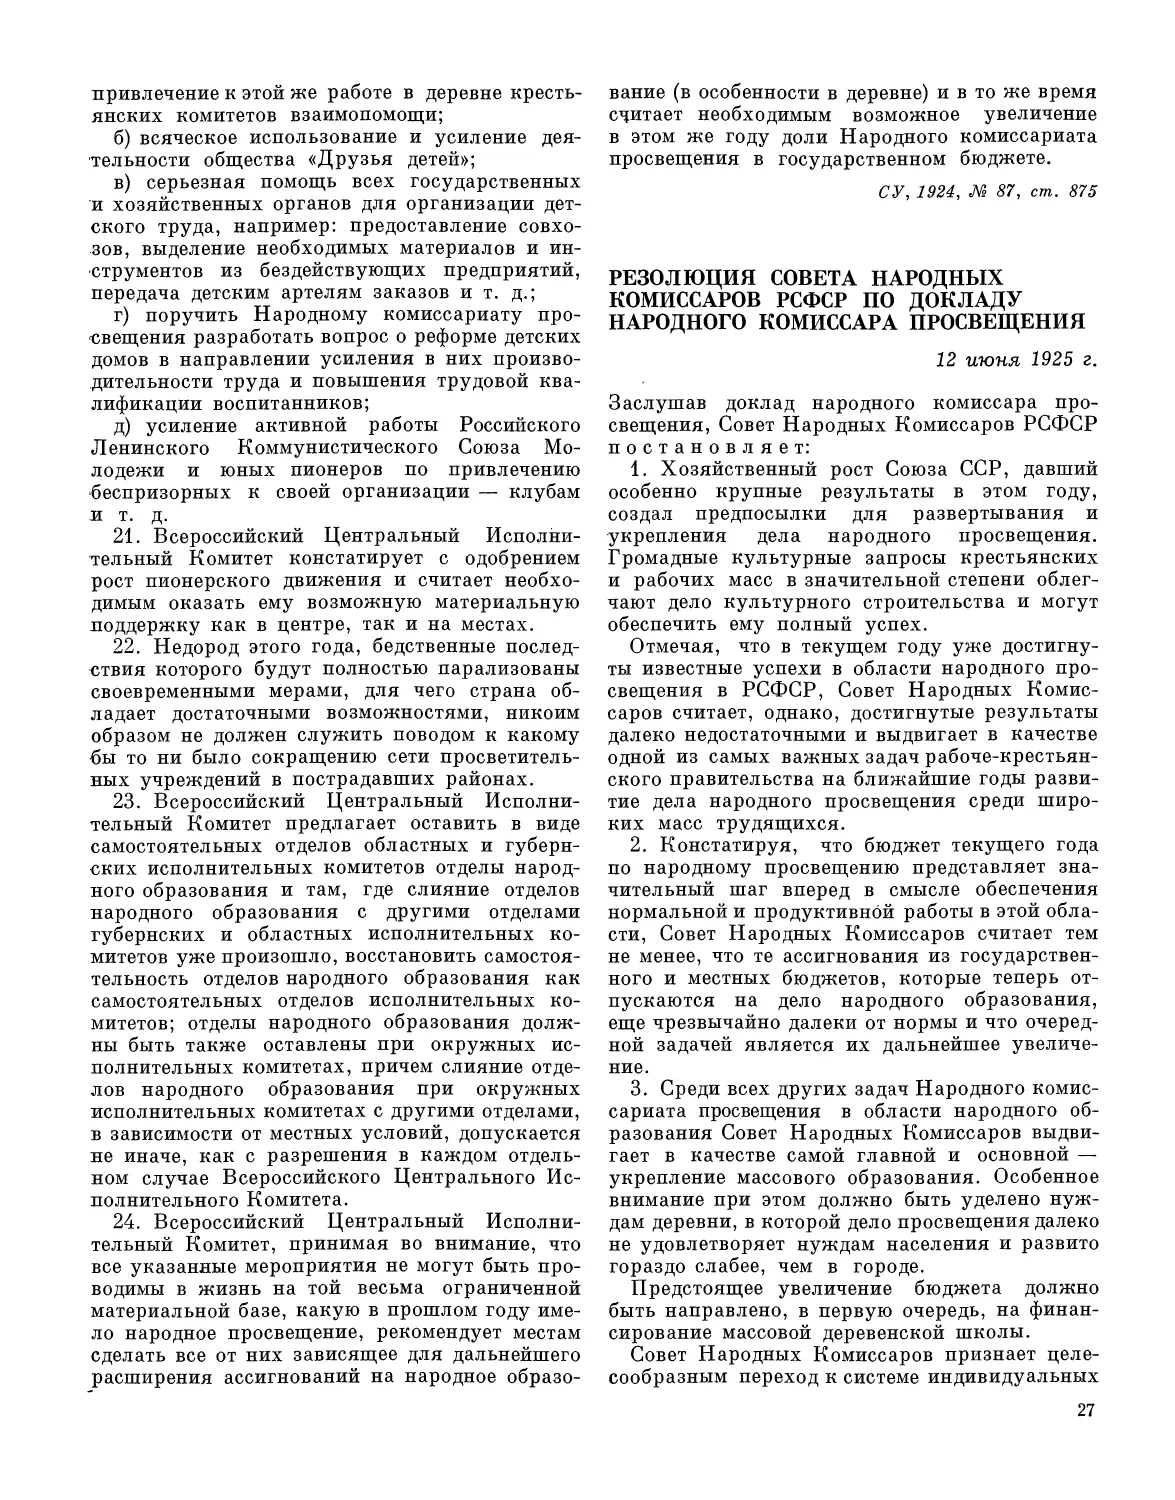 Резолюция CIIK РСФСР по докладу народного комиссара просвещения 12 июня 1925 г.